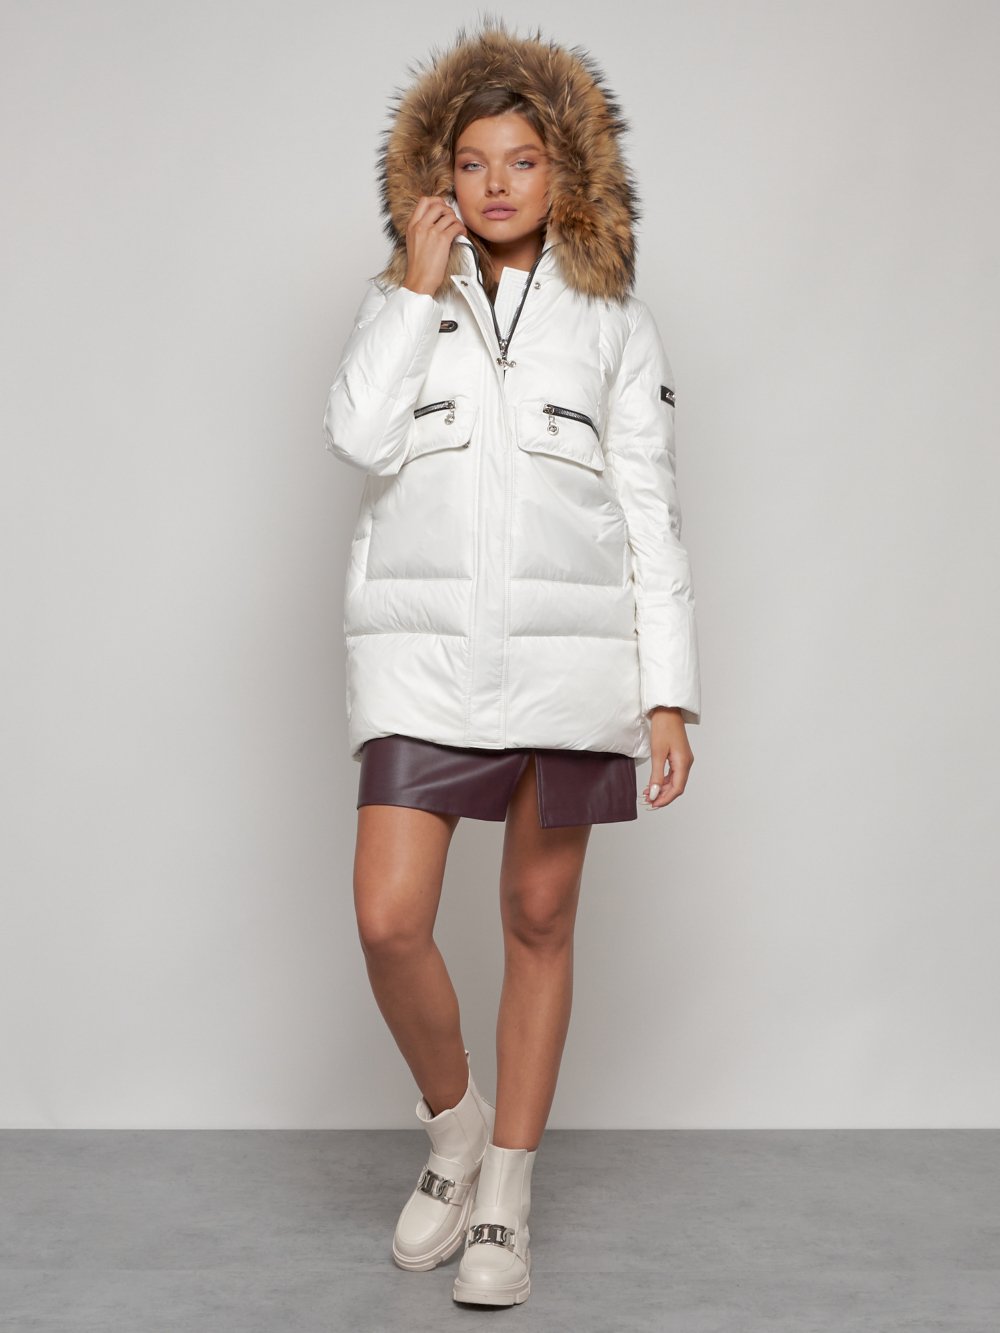 Купить куртку женскую зимнюю оптом от производителя недорого в Москве 132298Bl 1